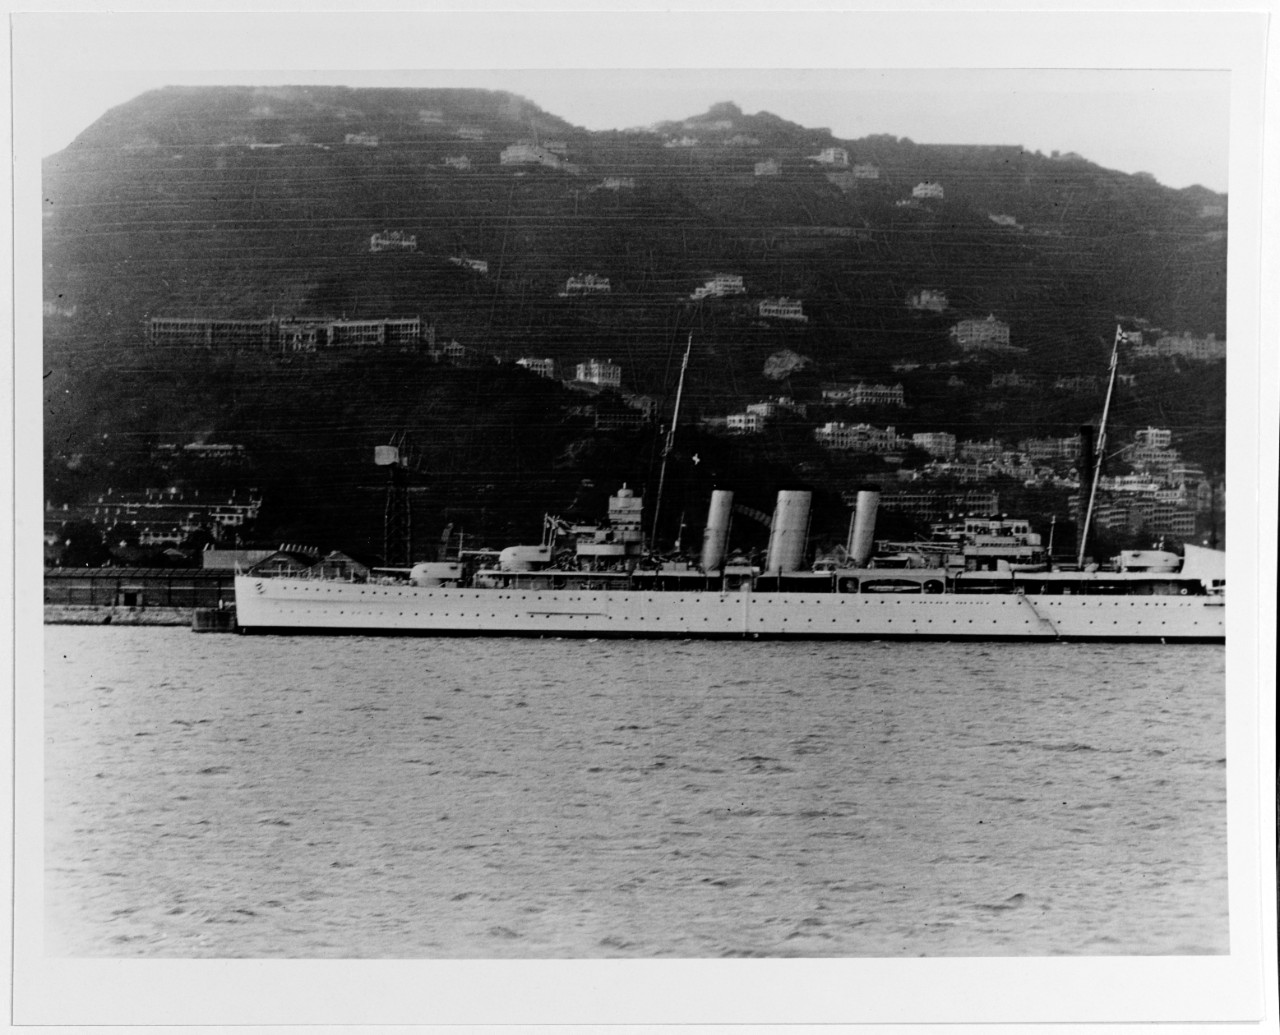 KENT (British heavy cruiser, 1926-1948)